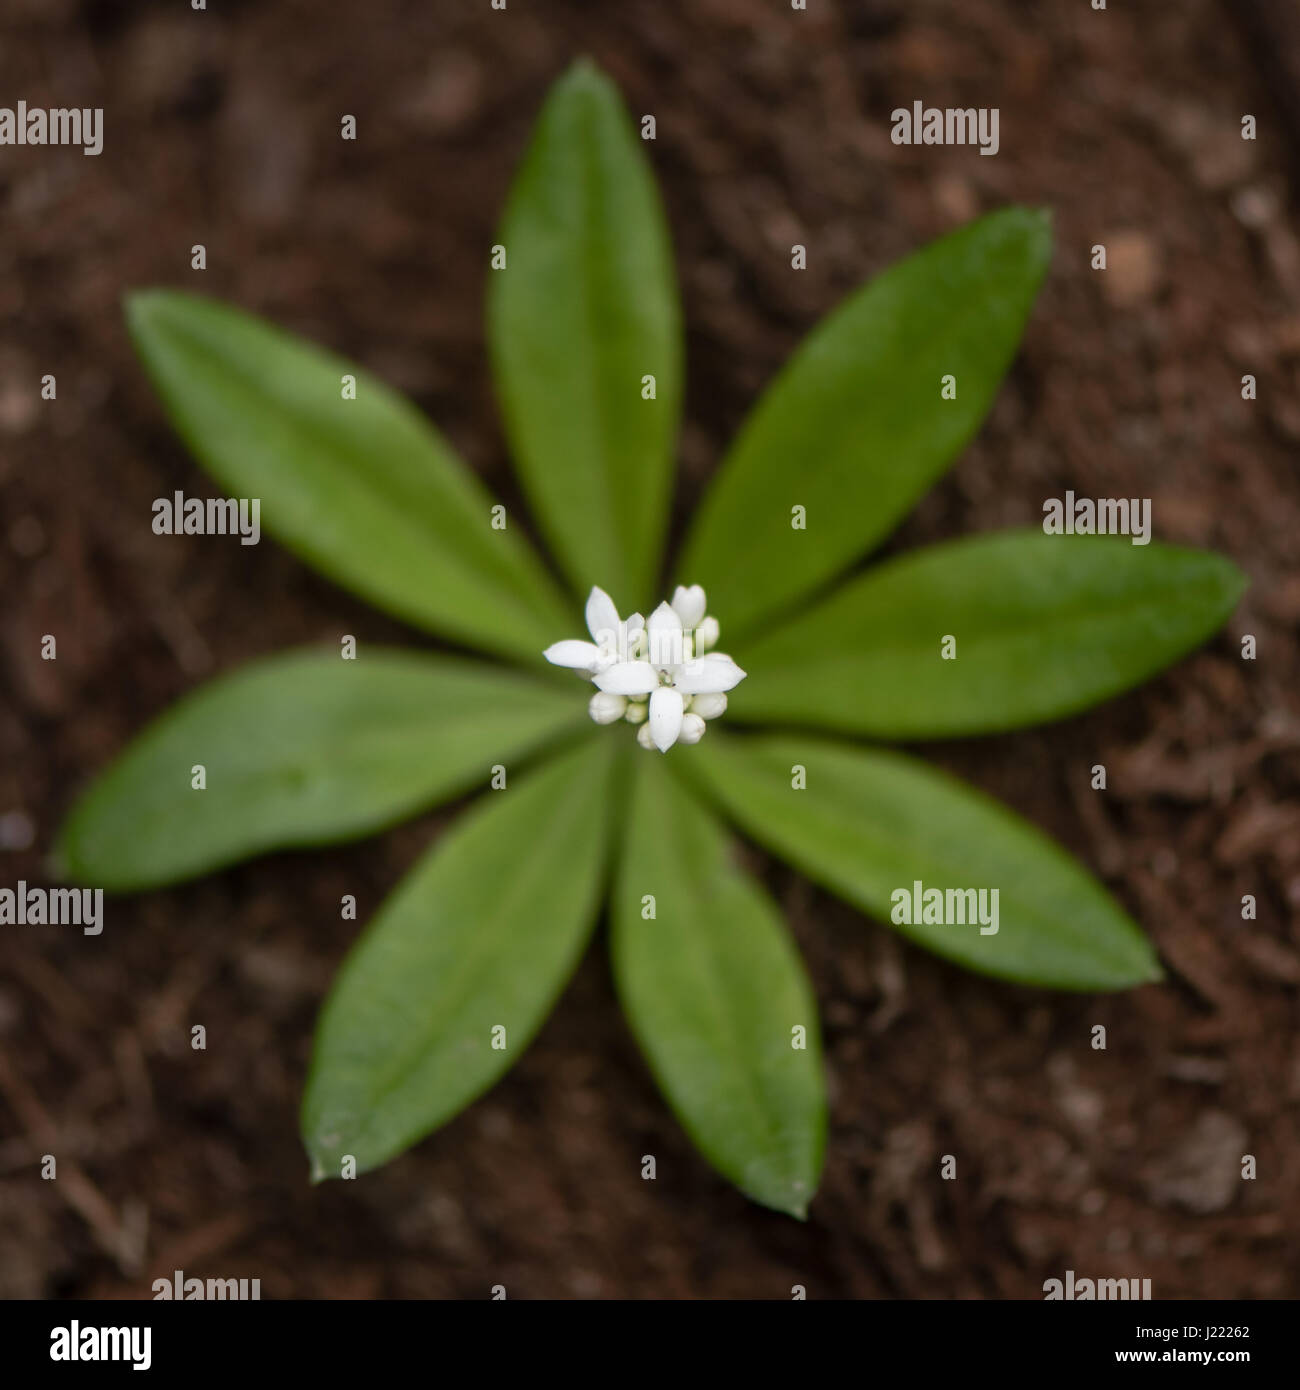 Waldmeister (Galium Odoratum) Blüten und Blätter von oben weißen Blütenstand von niedrig wachsenden Wald Labkraut in der Familie Rubiaceae, mit Blatt Quirl Stockfoto